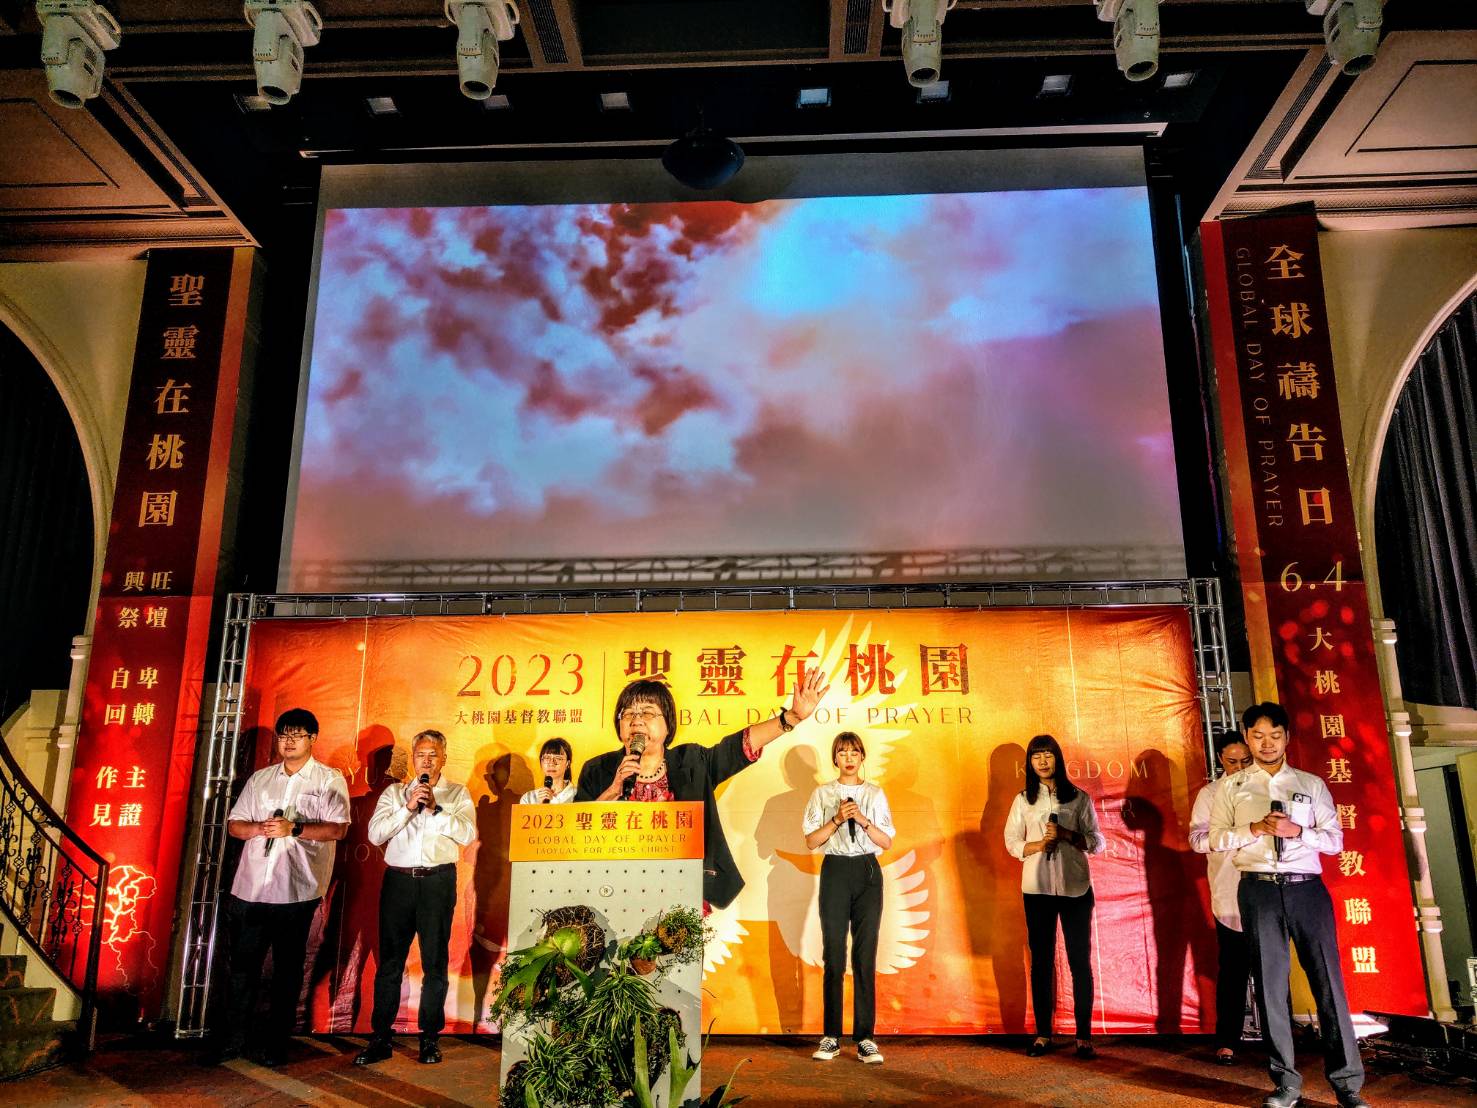 桃基盟主席韓慧蕙牧師帶領眾人齊唱「從這代到那代」